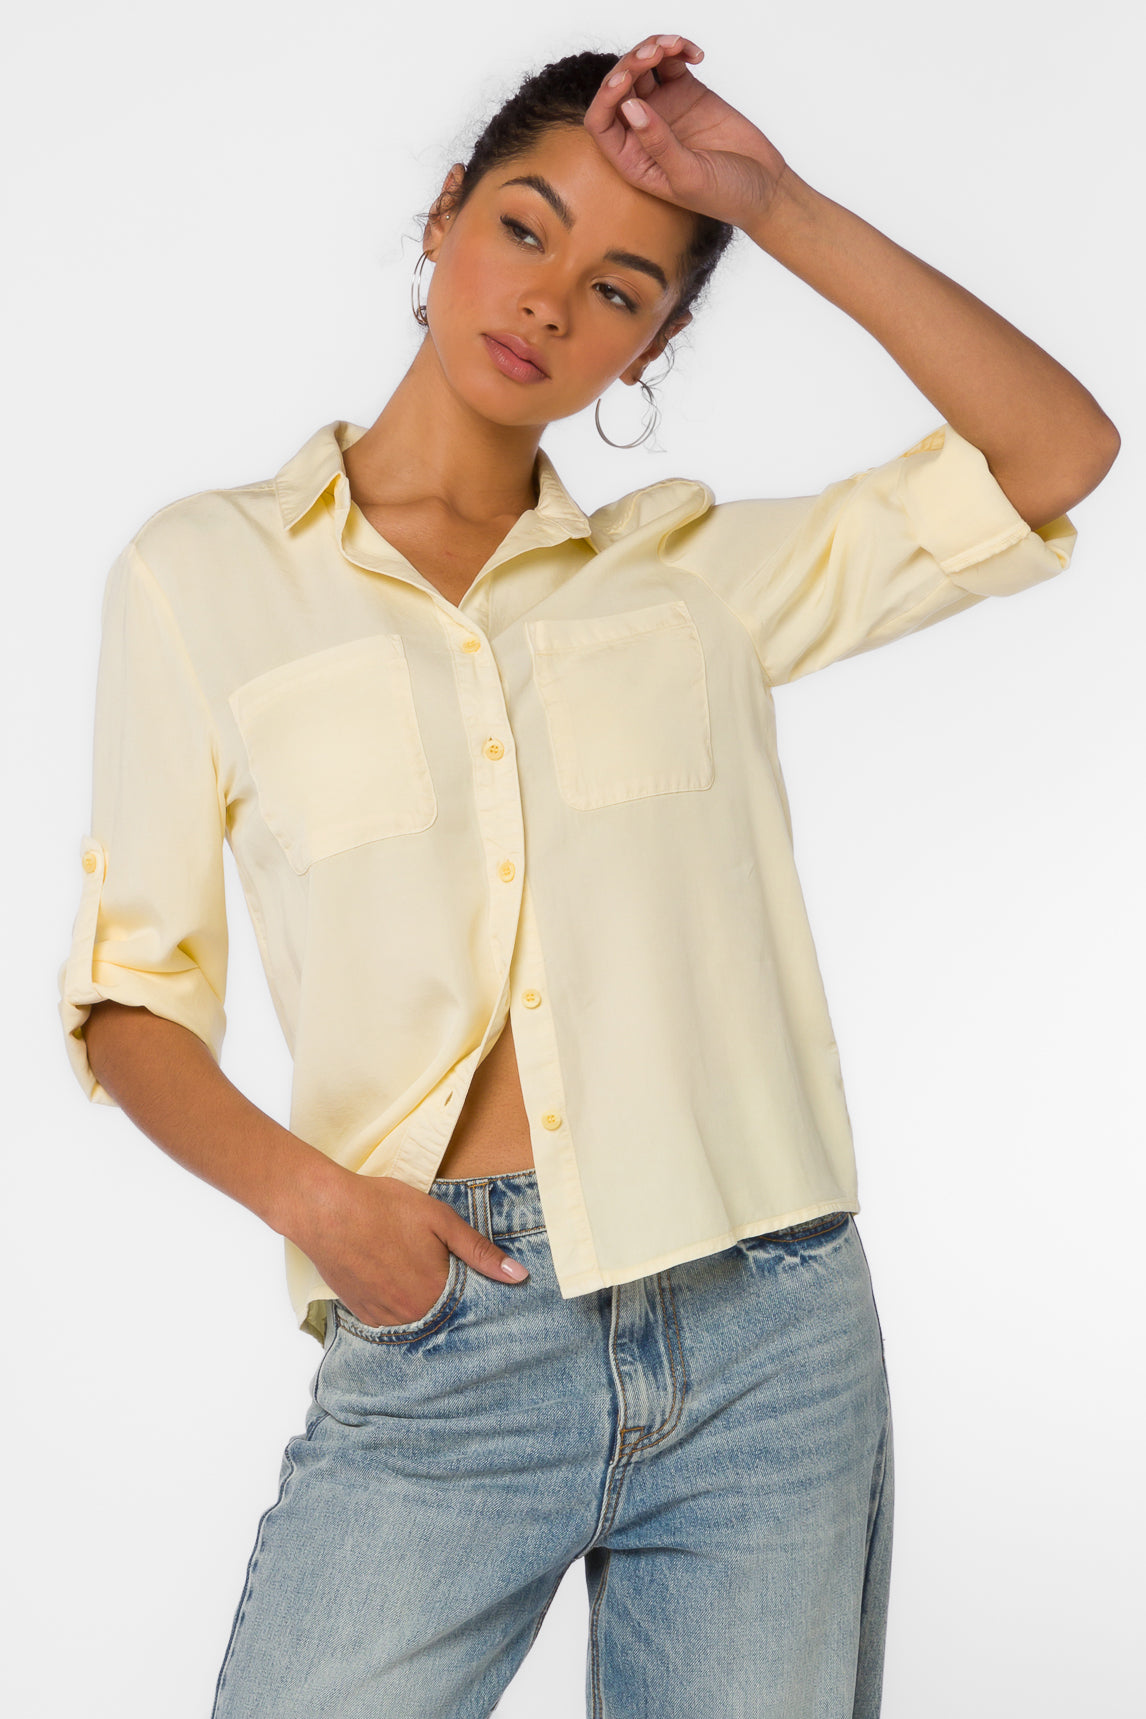 Lucia Pastel Yellow Shirt - Tops - Velvet Heart Clothing